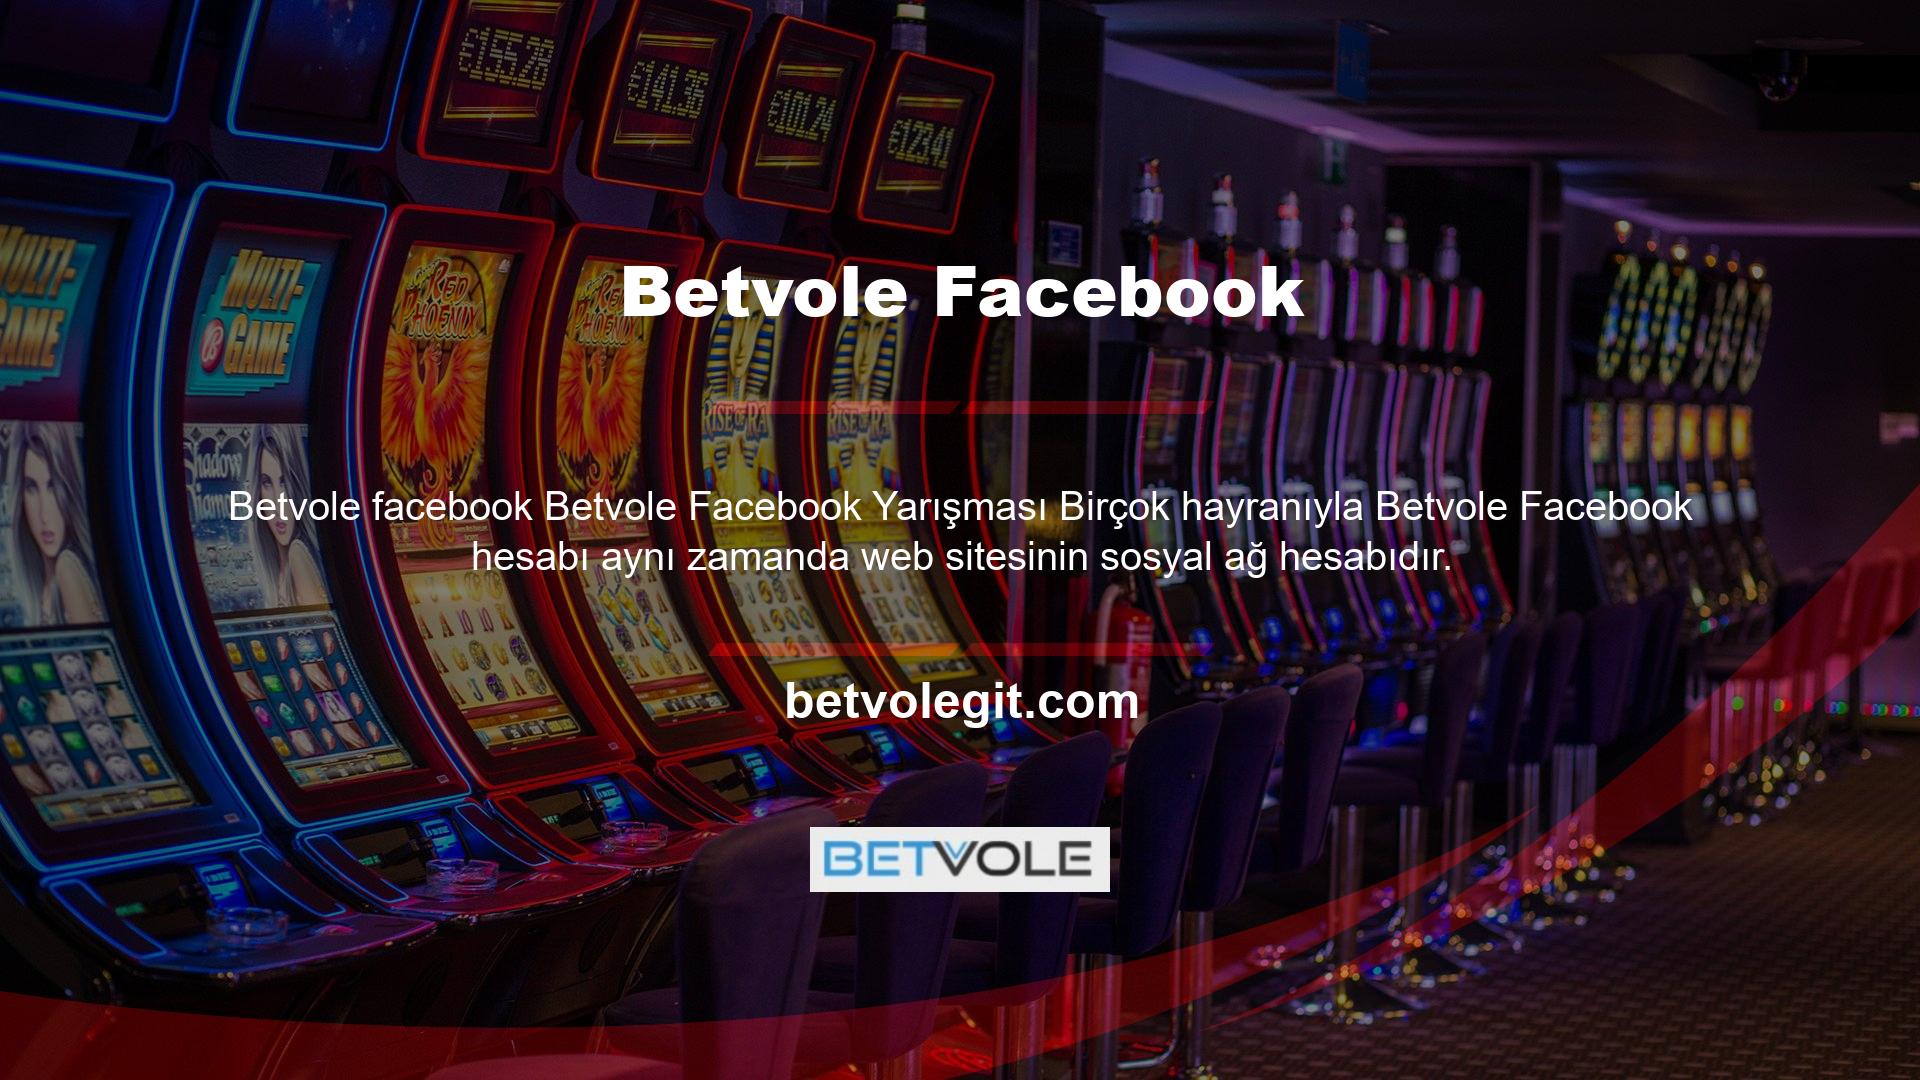 Bu hesabın aktif olarak kullanılabilmesi için ilk olarak bu hesap kullanılarak Betvole sosyal medya yarışması düzenlendi